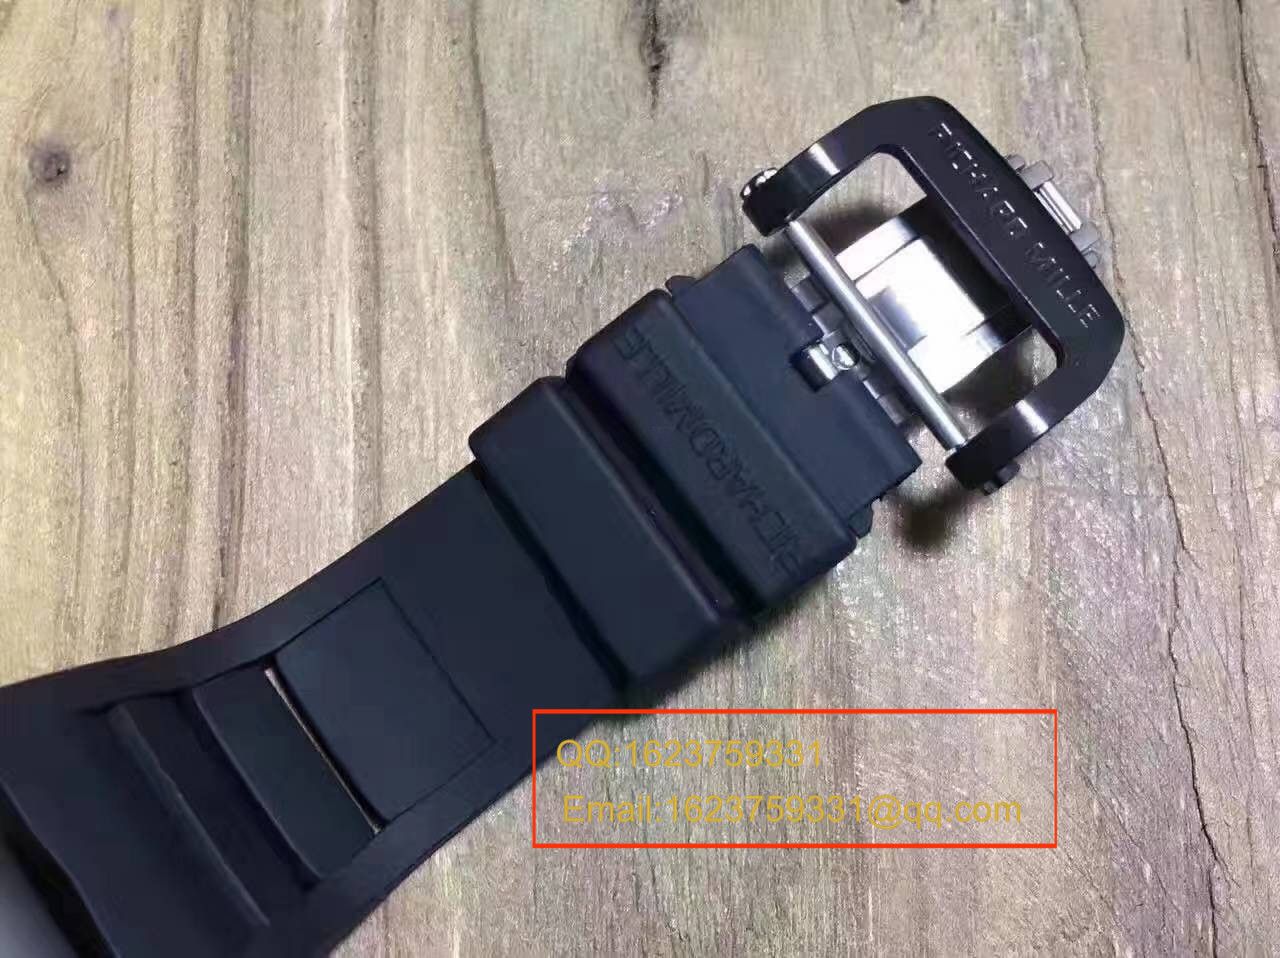 【RM超A精仿手表】里查德米勒男士系列RM 053腕表 / RM033